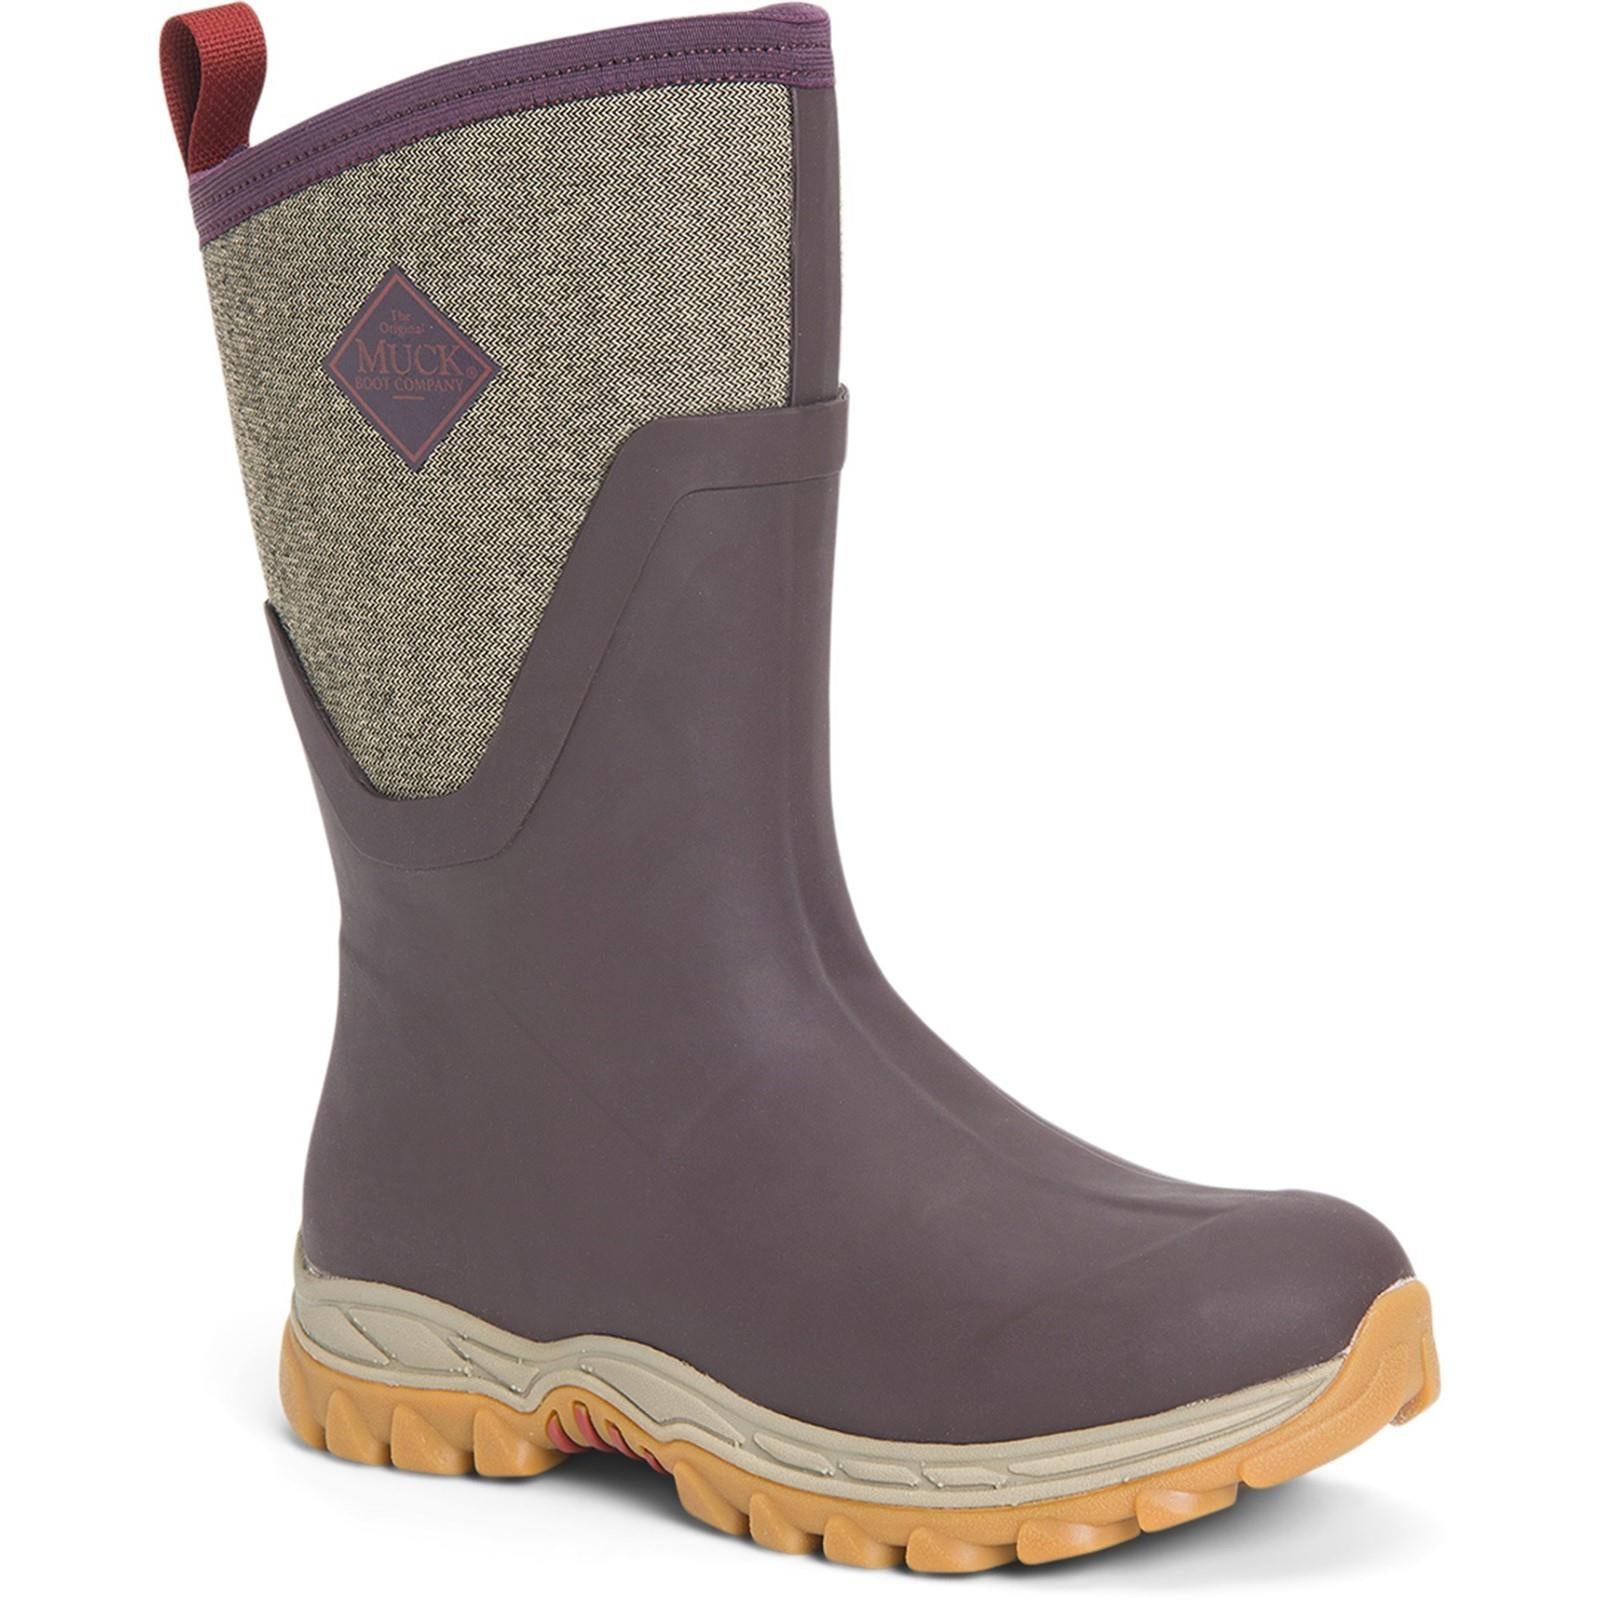 Muck Boots Arctic Sport Mid ladies wine warm fleece lined wellington boots